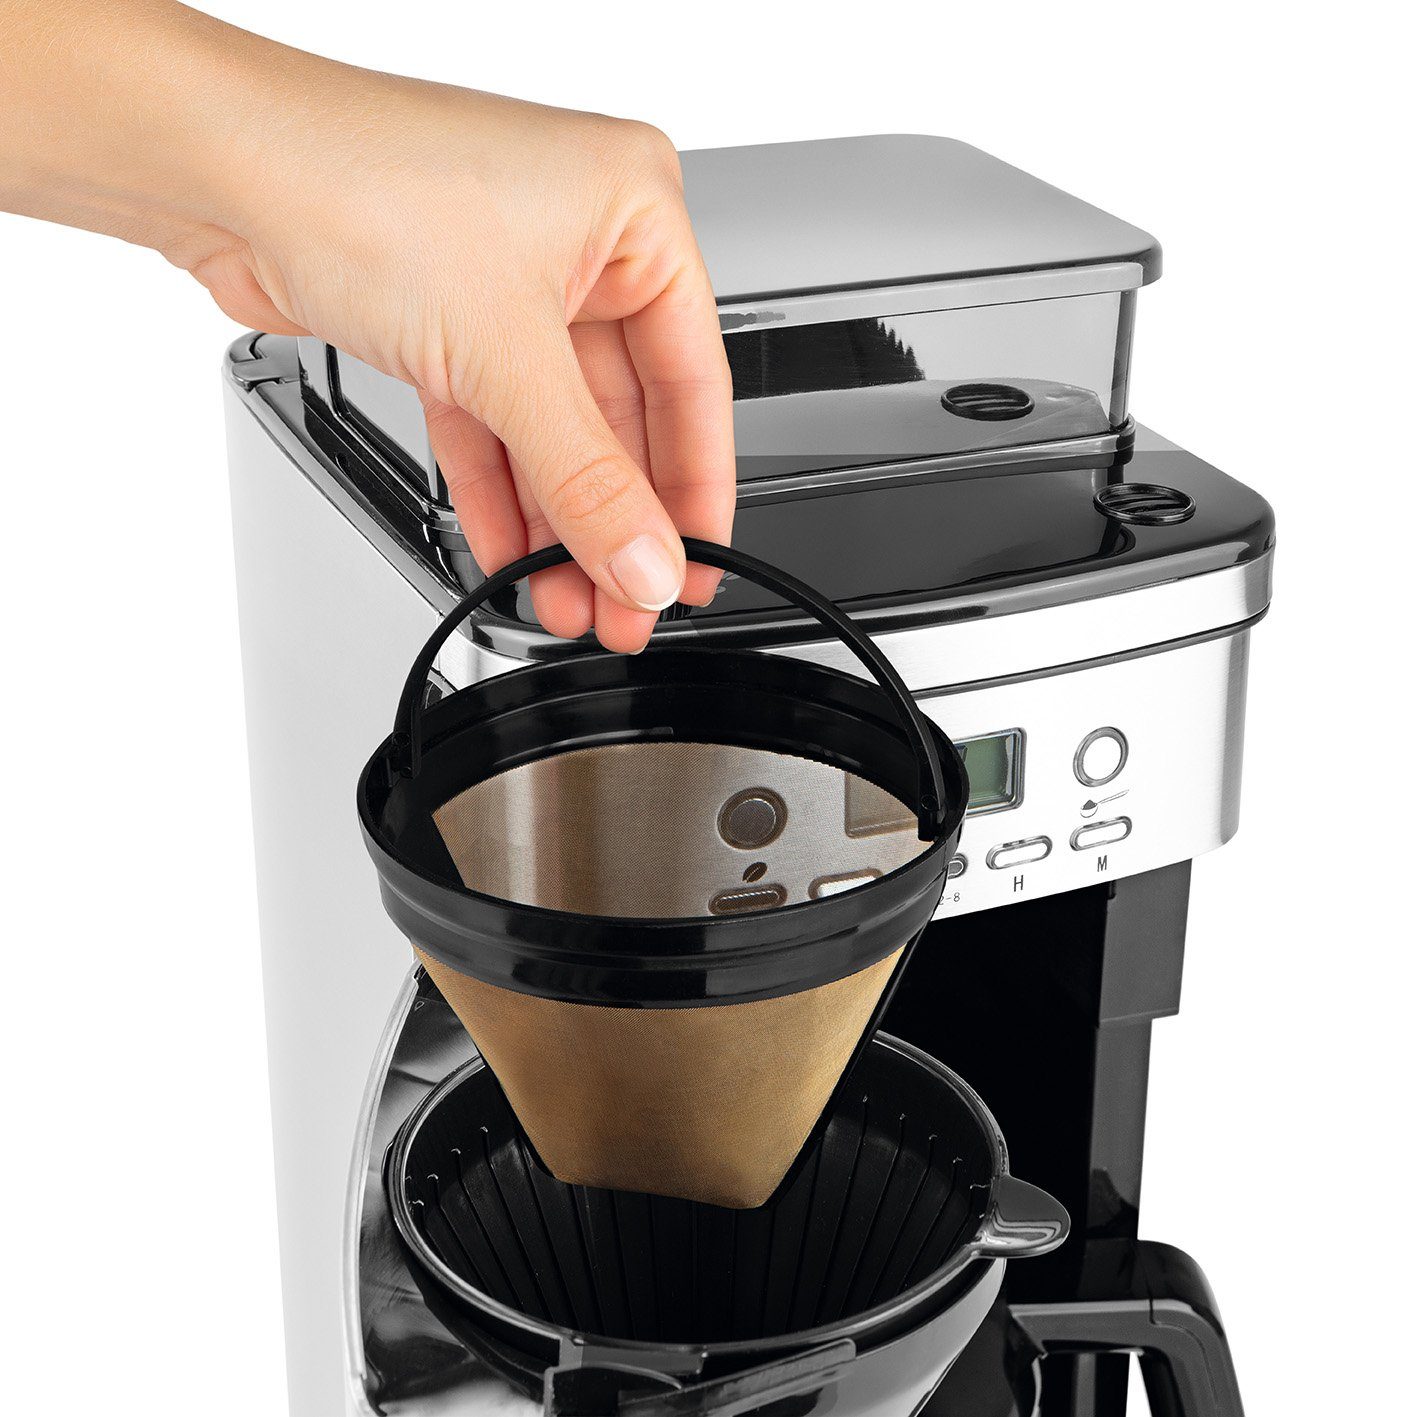 BEEM Filterkaffeemaschine FRESH-AROMA-PERFECT möglich und Mahlwerk Kaffeepulver Zubereitung Kaffeebohnen Permanentfilter, 8 Thermokanne Tassen, mit